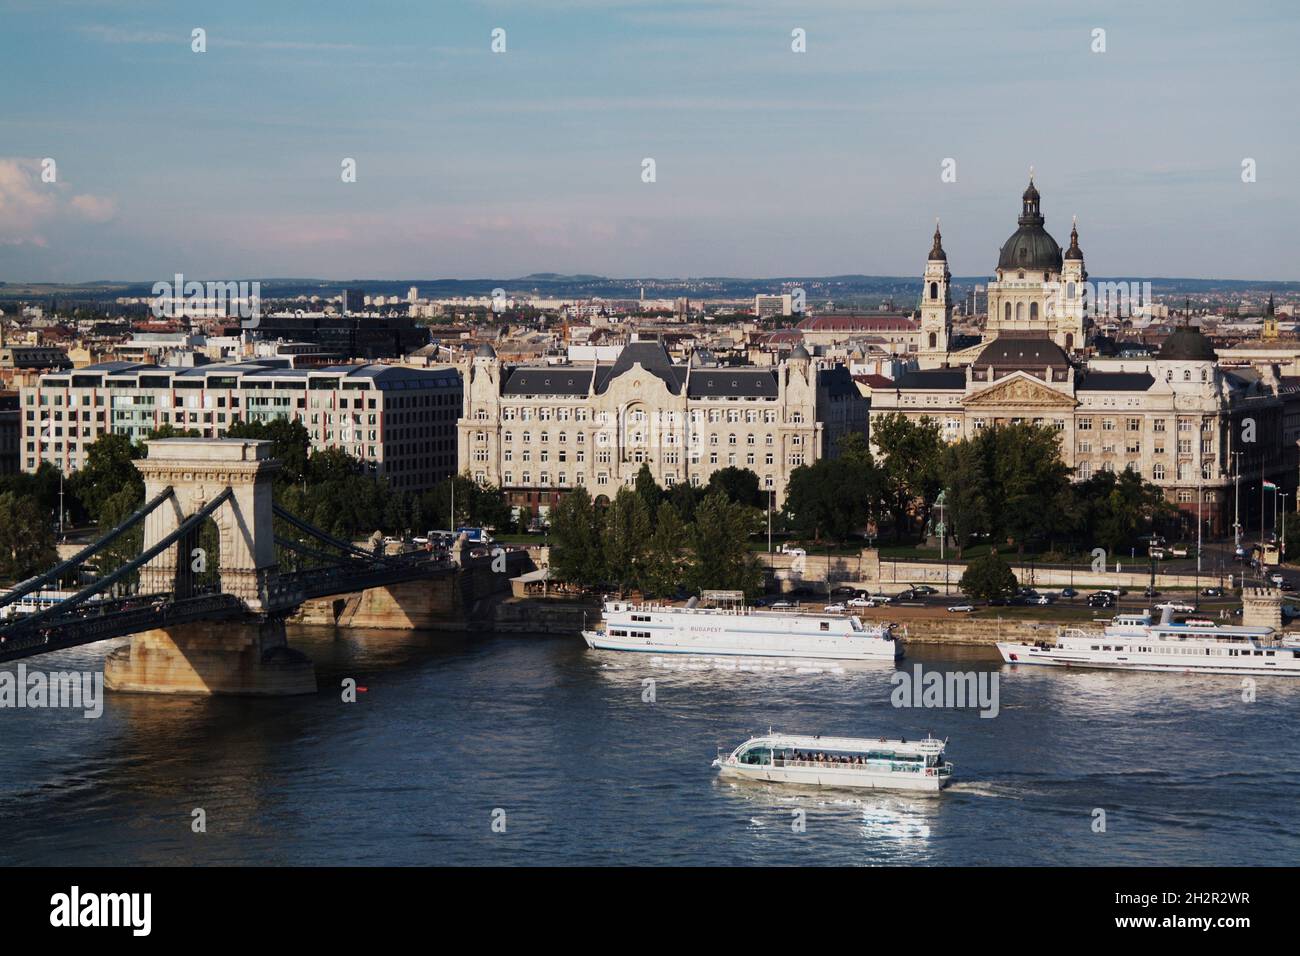 Ungarn, Budapest, Blick vom Burgberg auf der Buda-Seite der Donau zur Pest-Seite mit Kettenbrücke, links und Stephan's Basilika rechts sowie dem Gresh Stock Photo